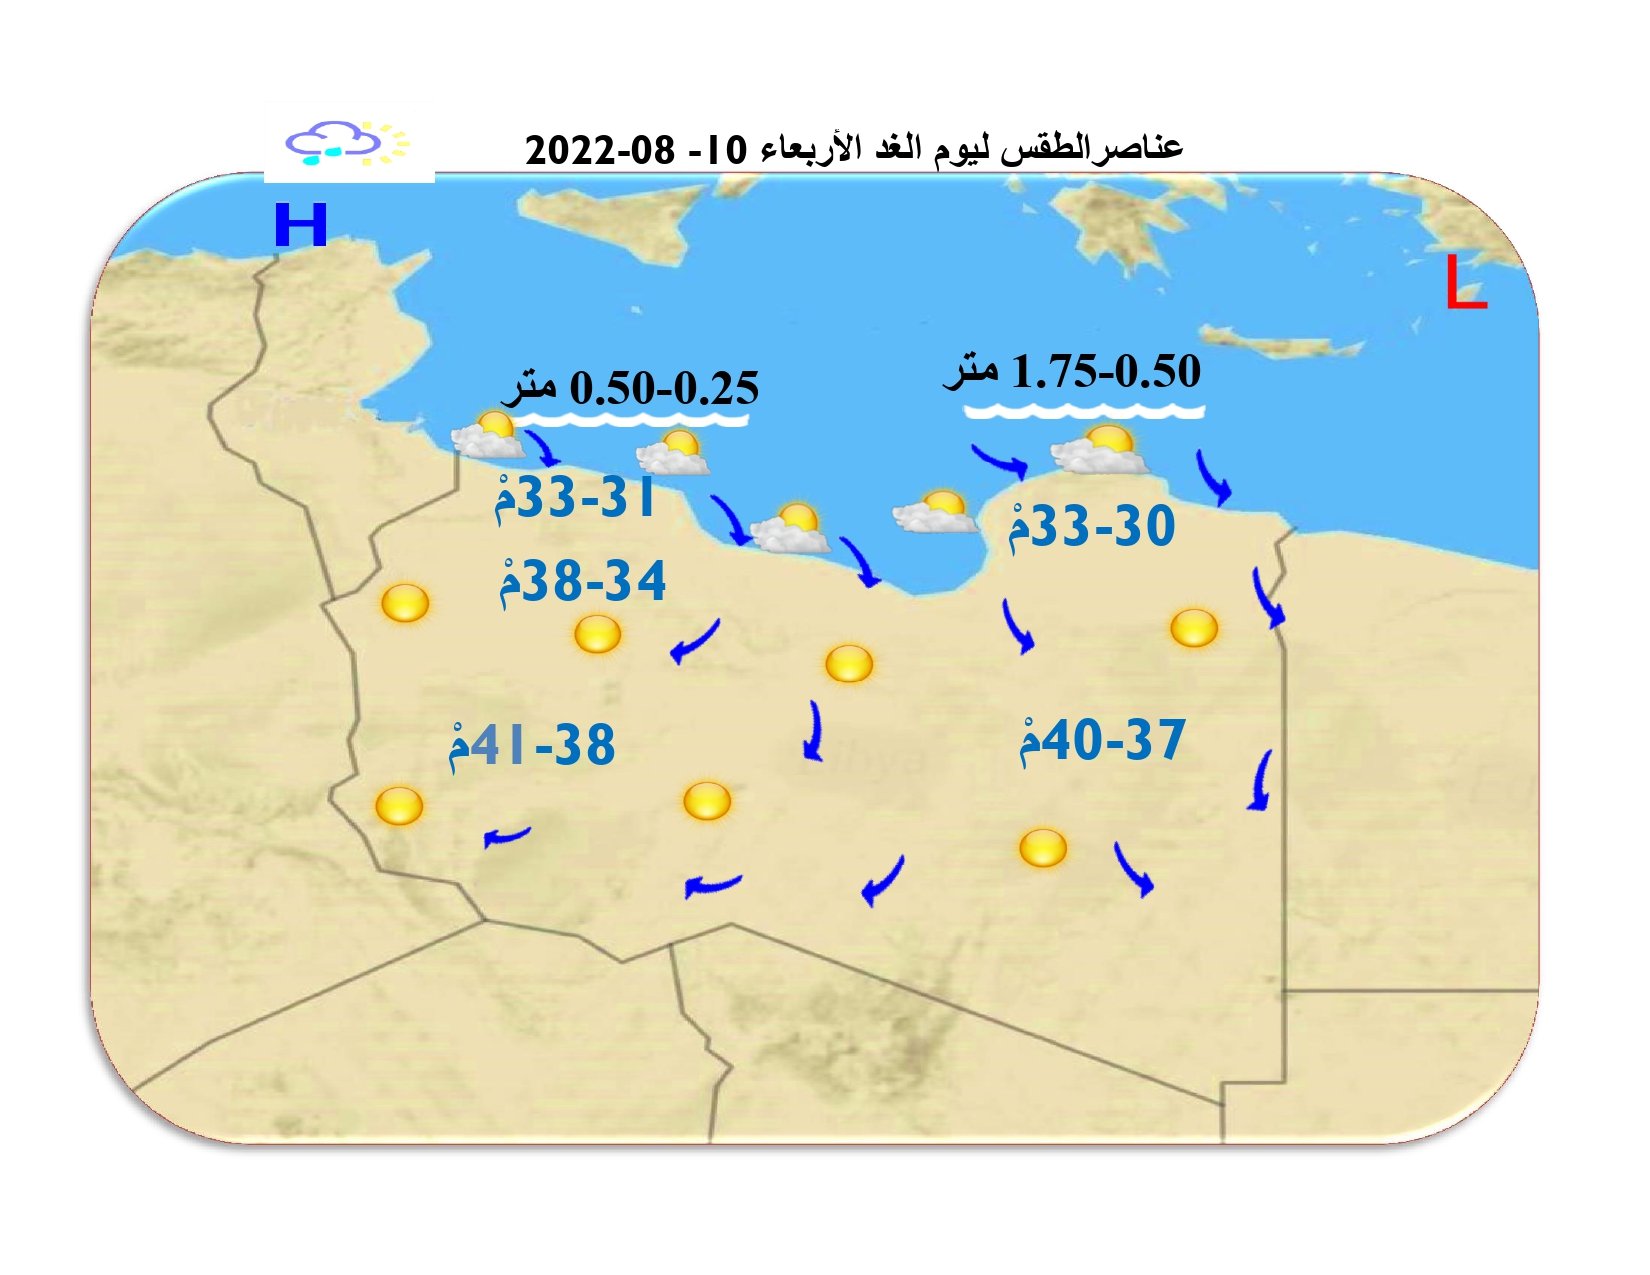 الطقس  - تبقى الرطوبة عالية على المناطق الساحلية  مع تكاثر للسحب على المناطق الغربية.